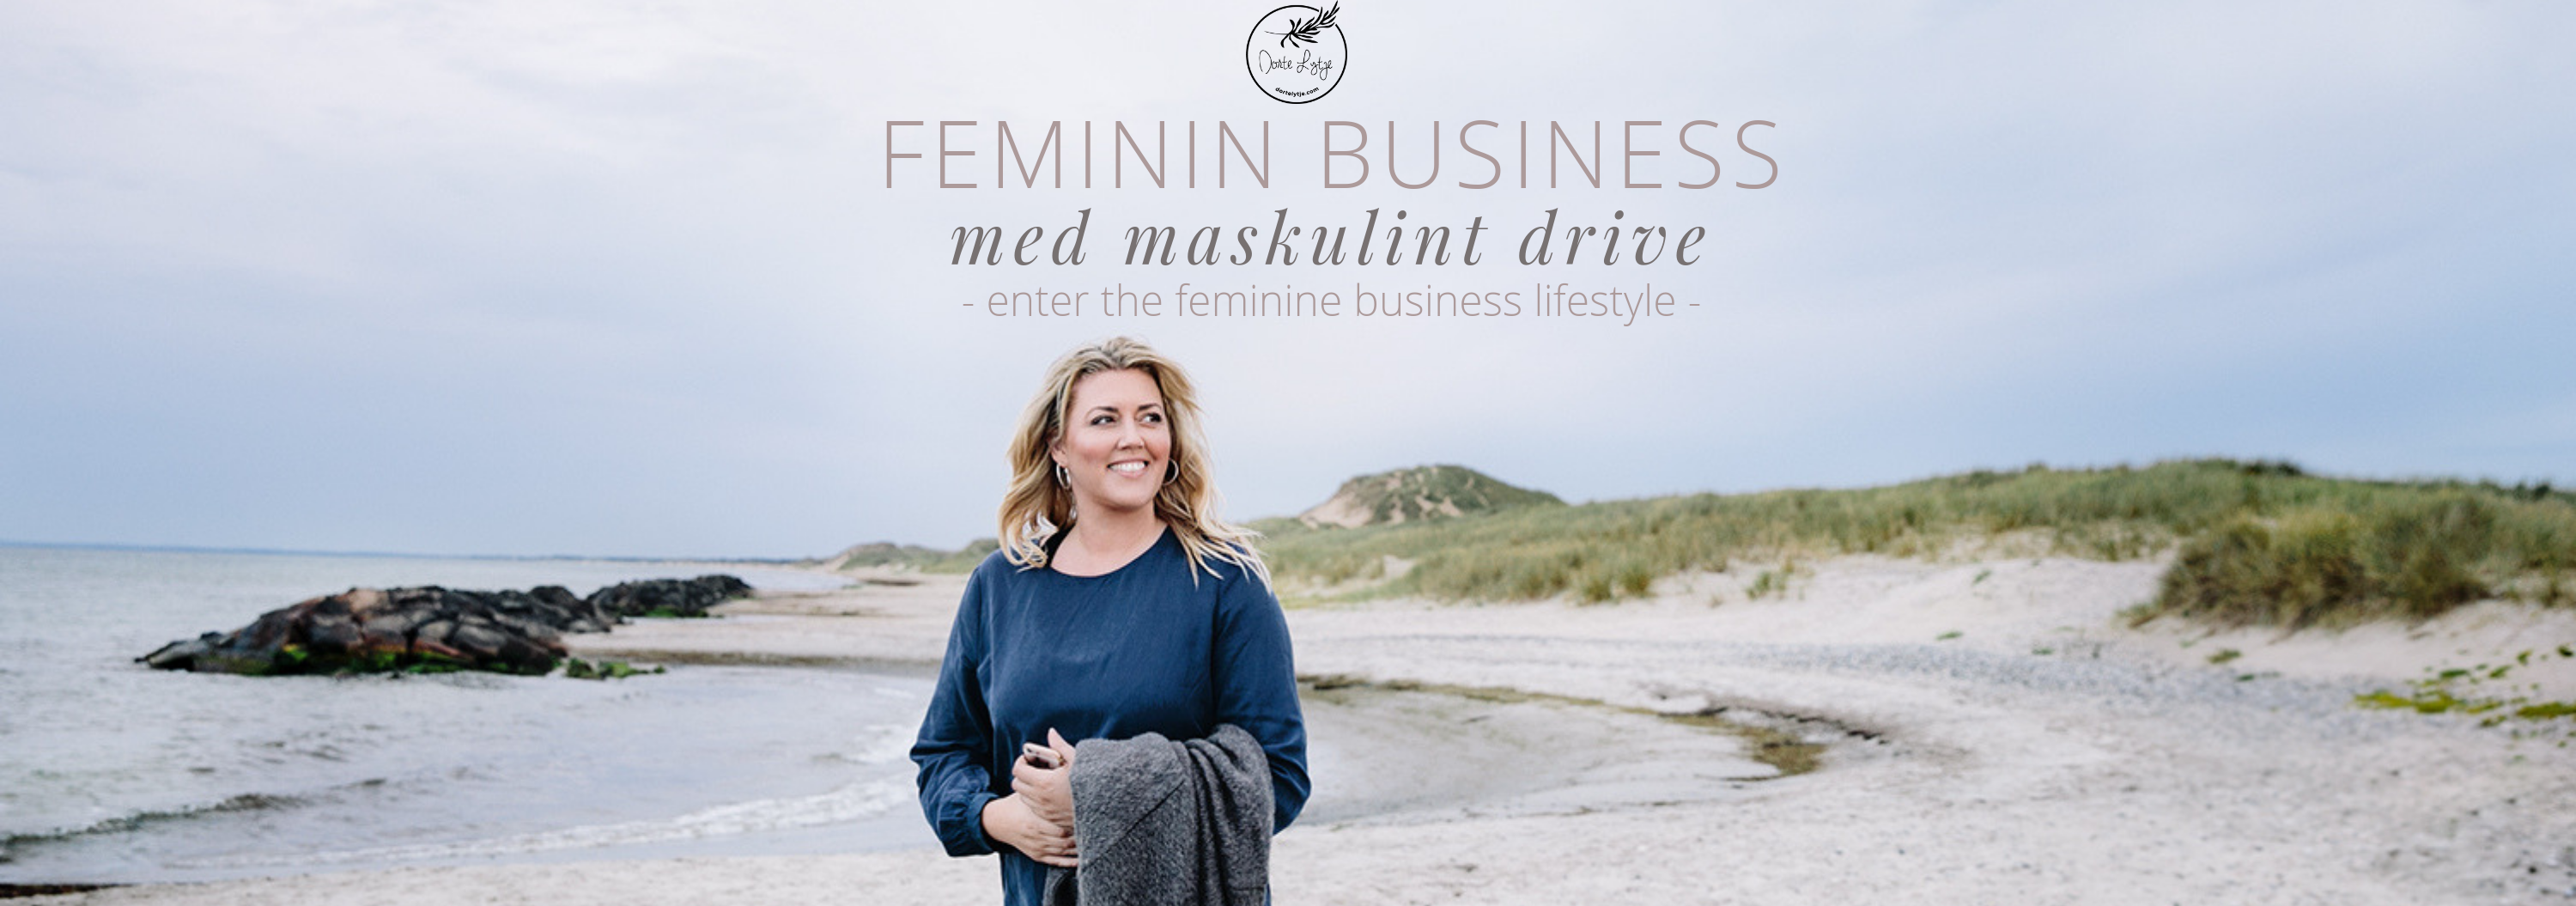 Feminin business bogen Dorte